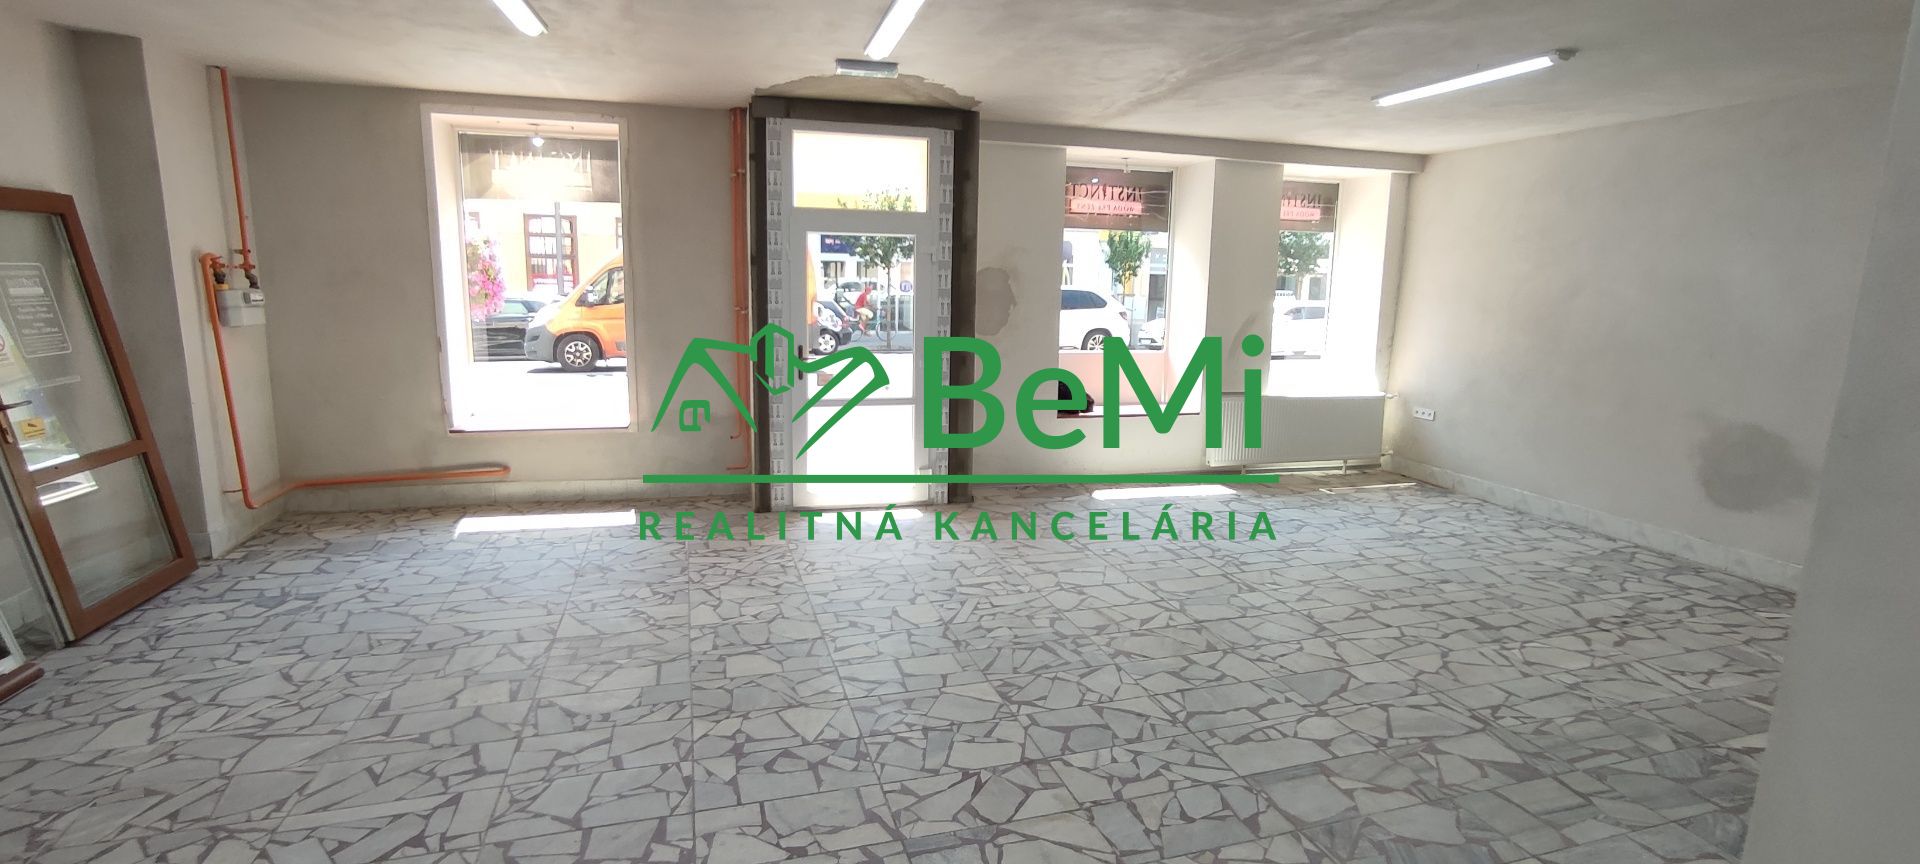 ID: 003-25-STK3 Obchodné priestory v centre mesta Lučenec na prenájom